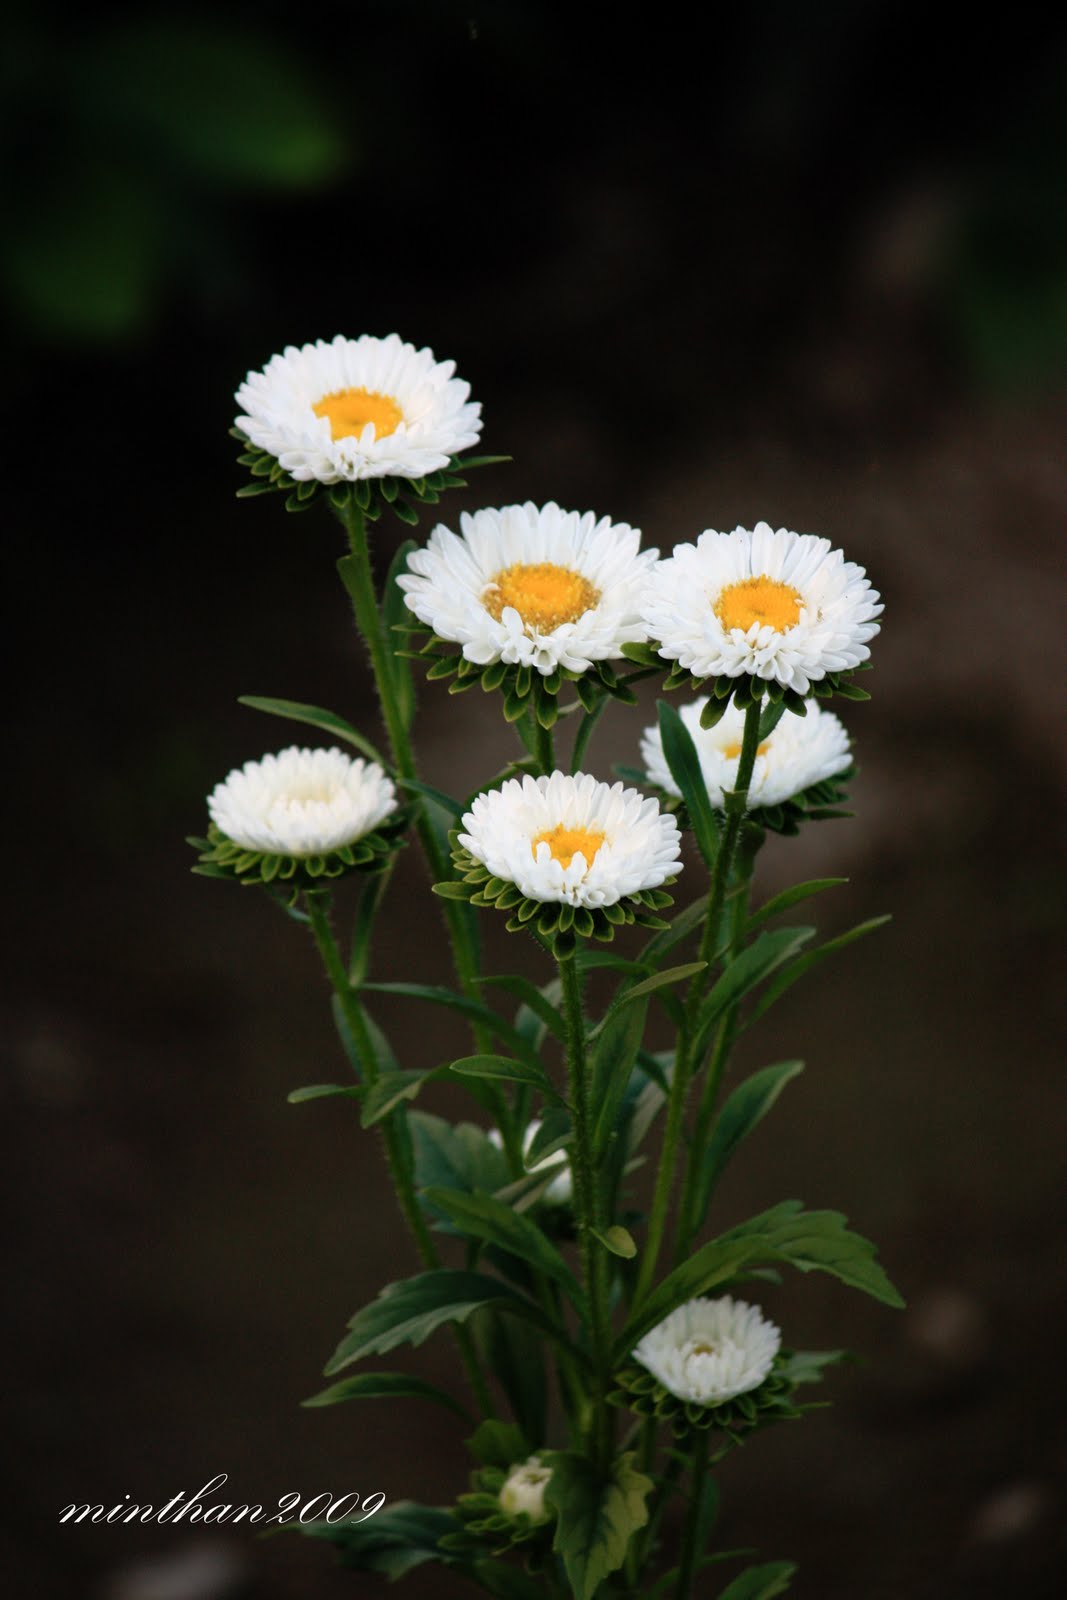 [whiteflower.jpg]